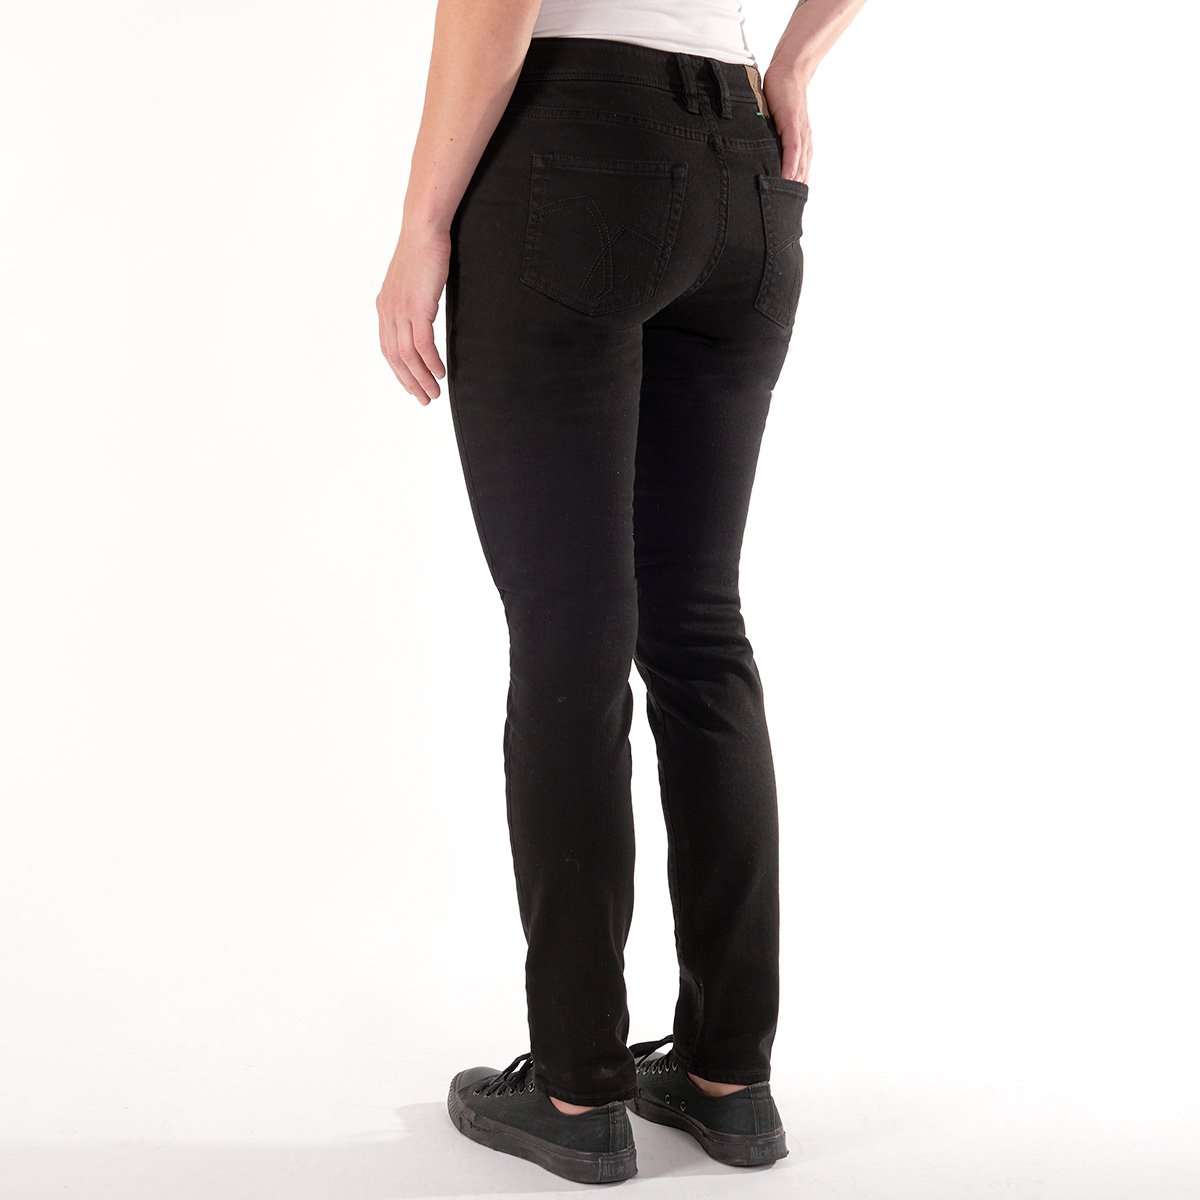 Die fairjeans Damenjeans in Schwarz ist aus Bio-Baumwolle gefertigt und hat eine schmale Passform im Slim Fit. Ein Must-Have für jede umweltbewusste Garderobe.